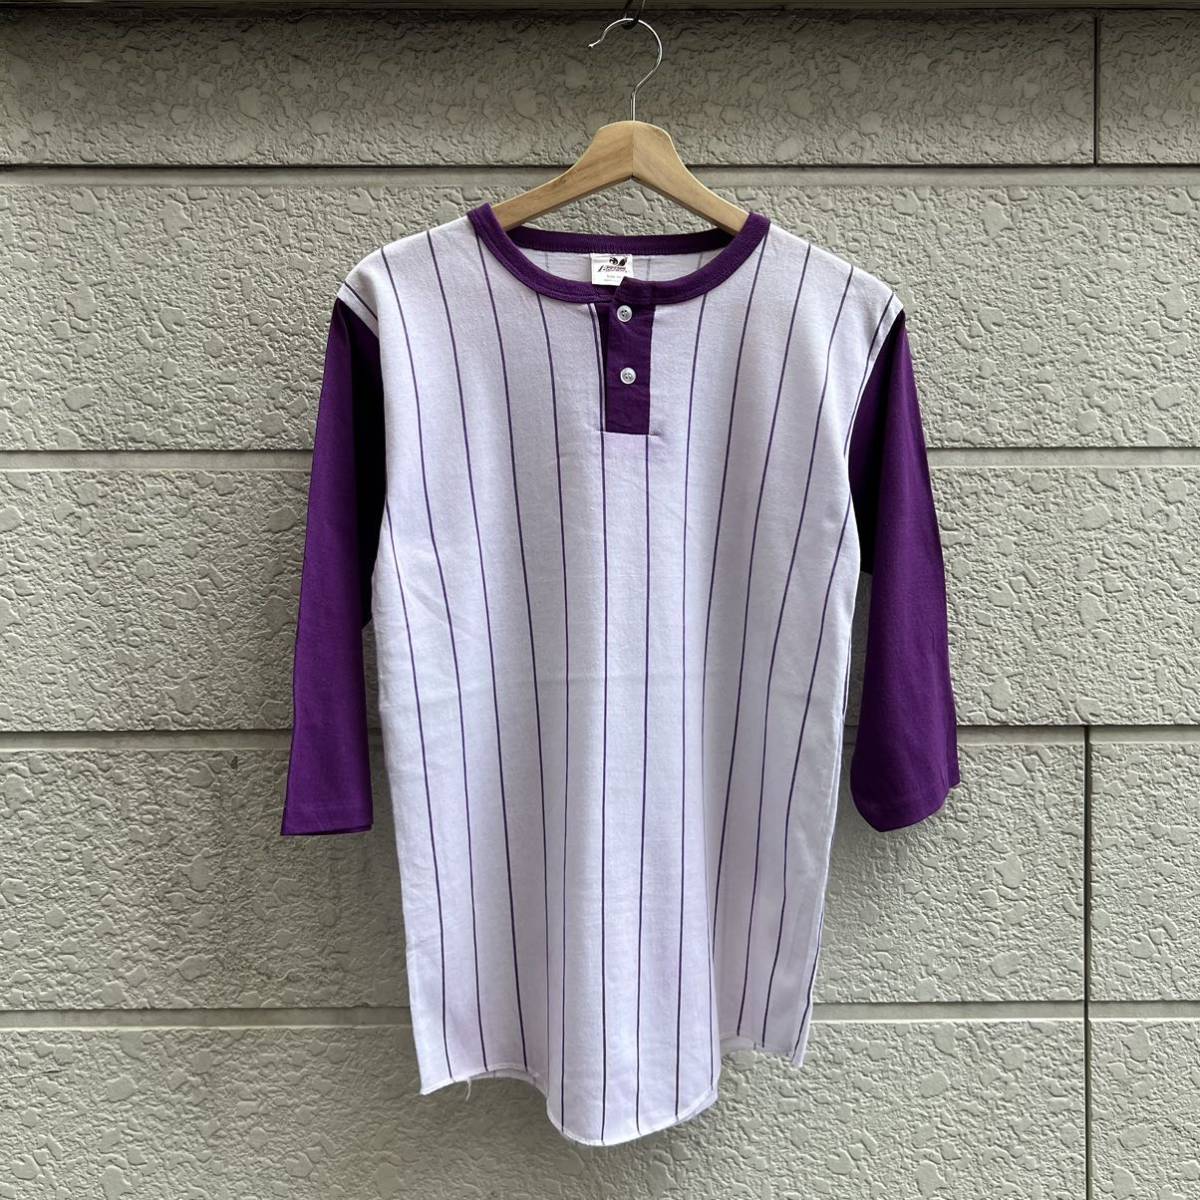 80s USA製 ベースボールTシャツ ストライプ柄 紫 パープル Bantam 5分袖 7分袖 シングルステッチアメリカ製 古着 vintage ヴィンテージ ⑥の画像1